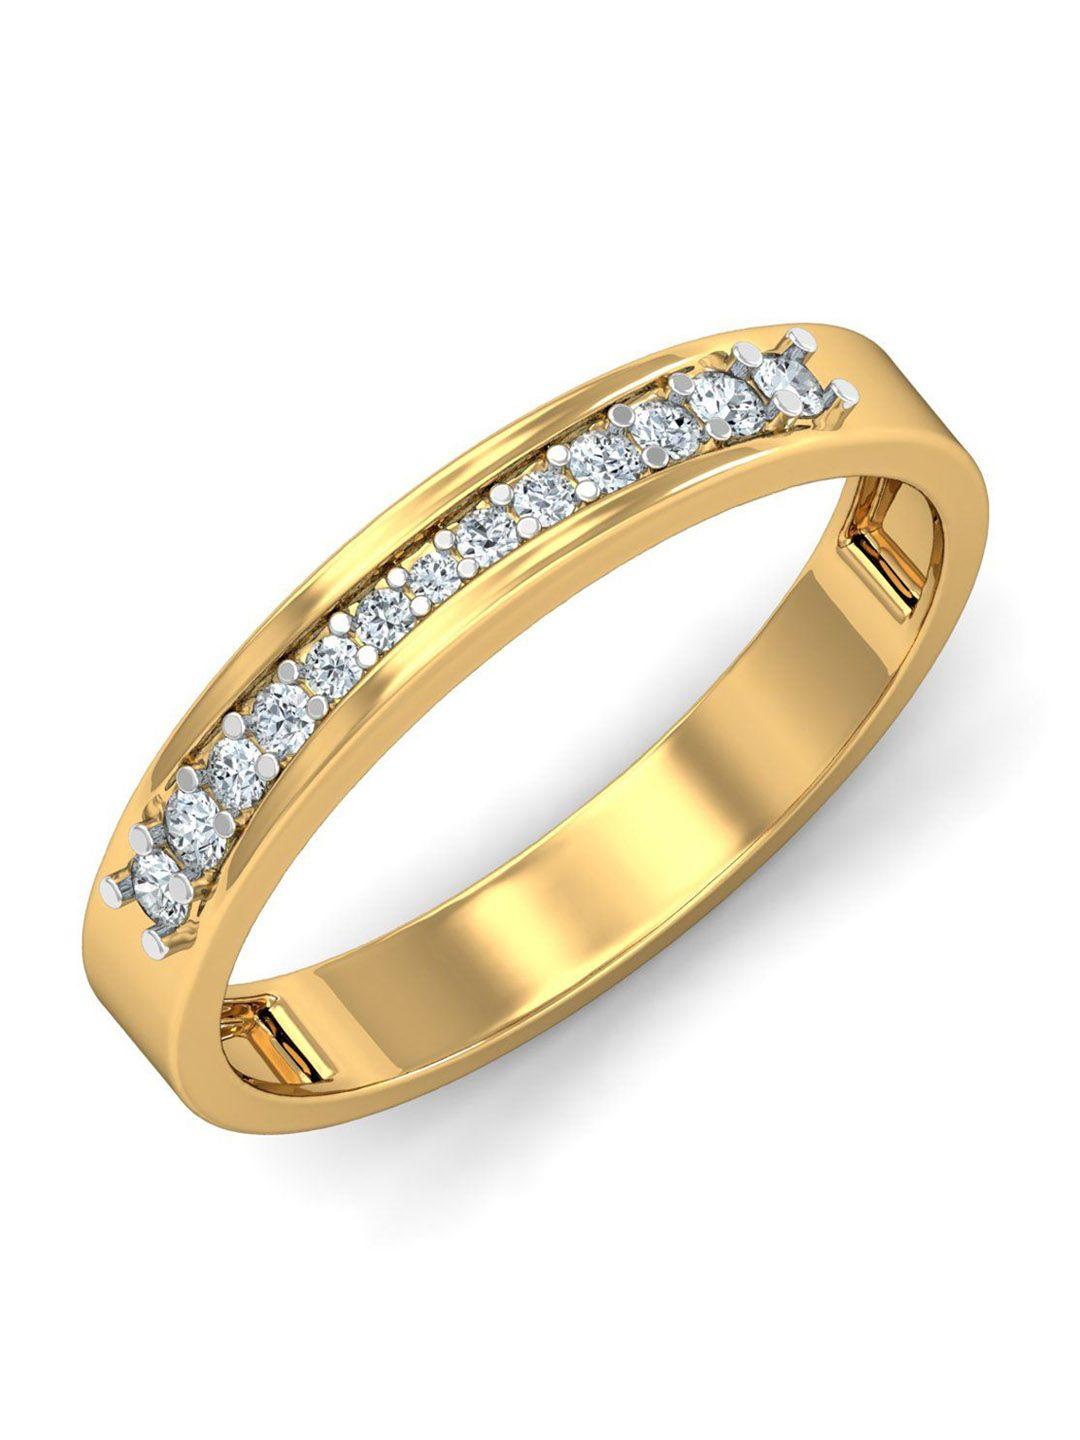 kuberbox kehri 18kt gold diamond-studded couple band ring-1.92gm